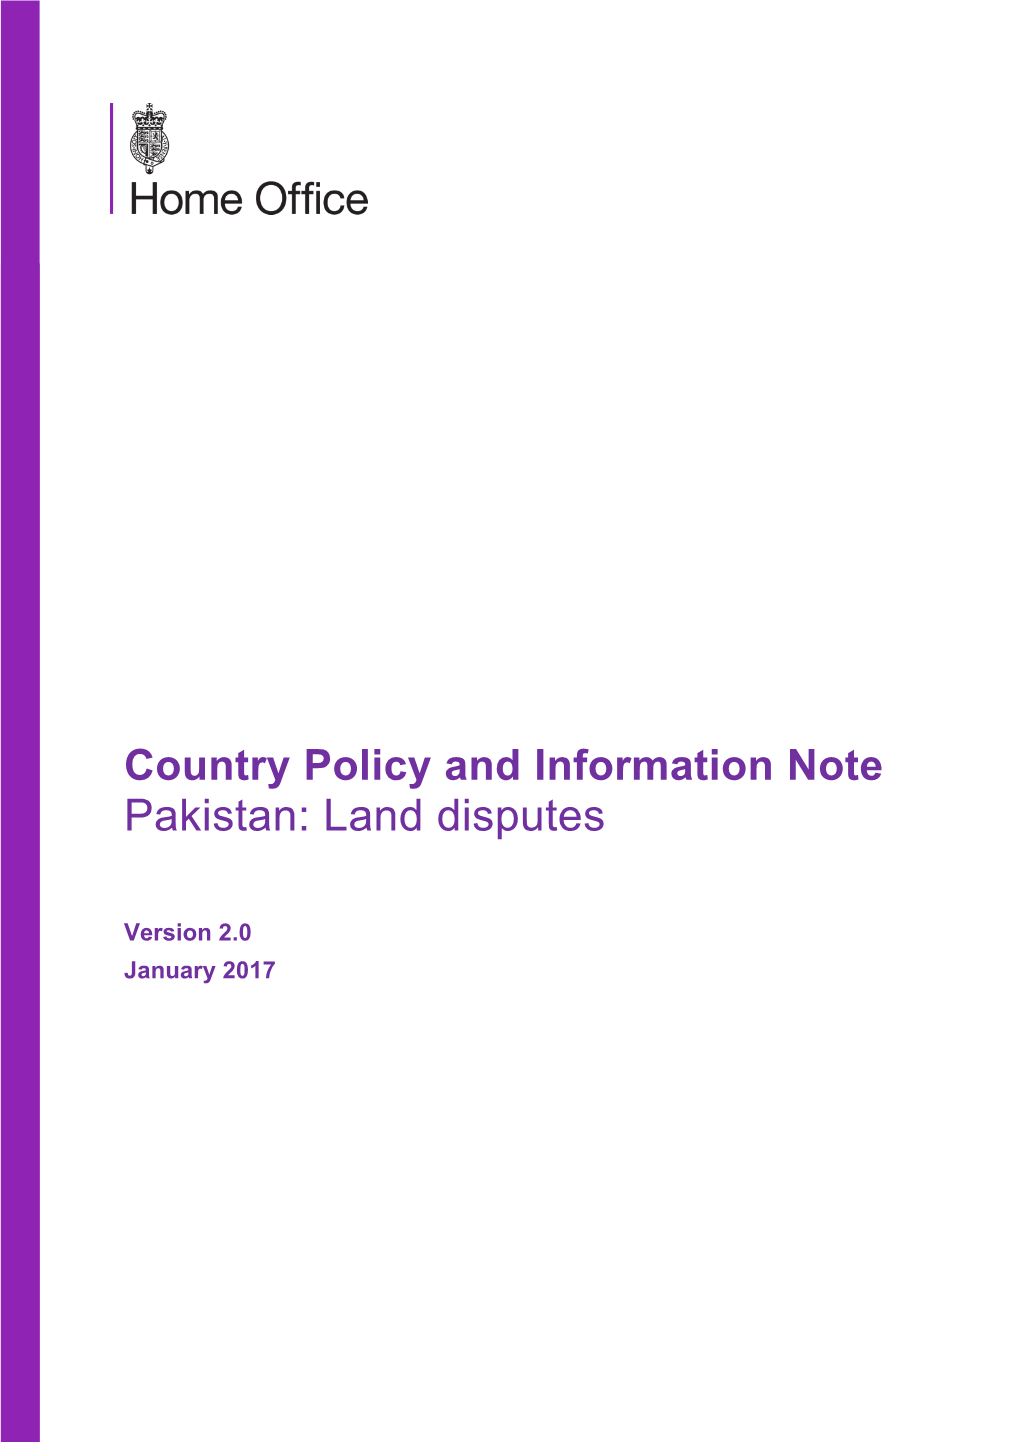 Pakistan: Land Disputes